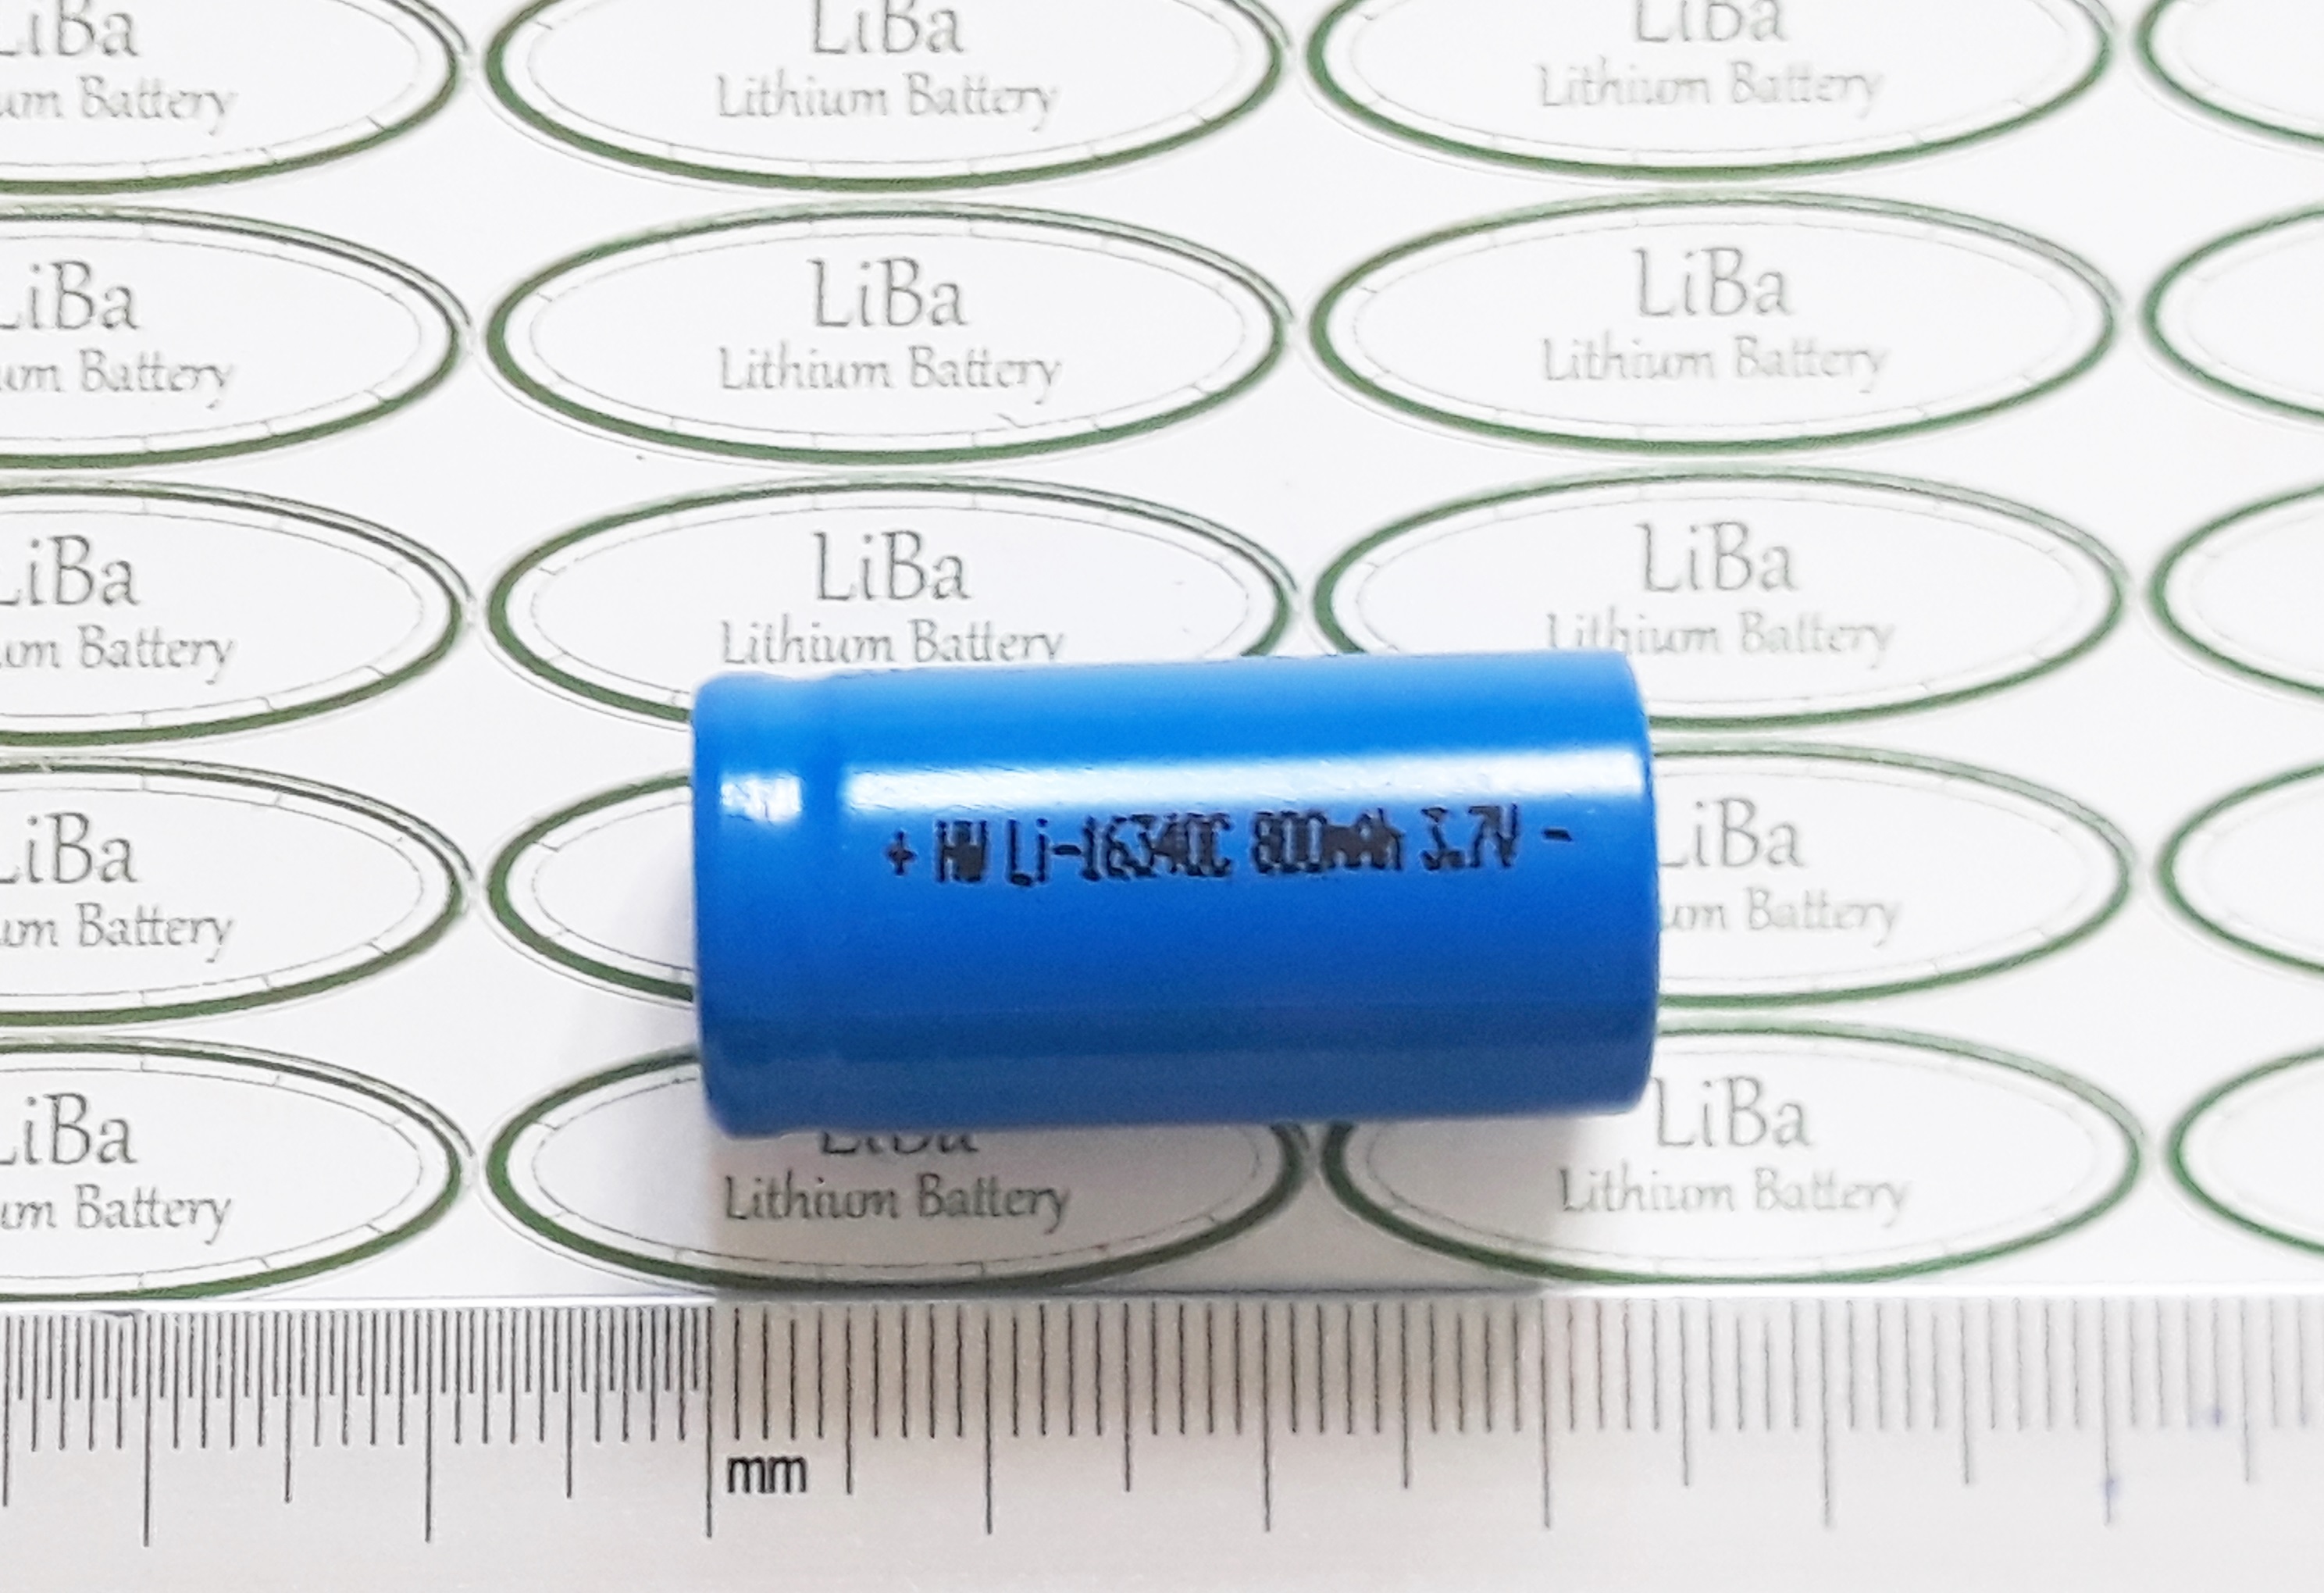 HCMPin Lithium ion 16340 3.7V 700mAh, 800 mAh - LiBa